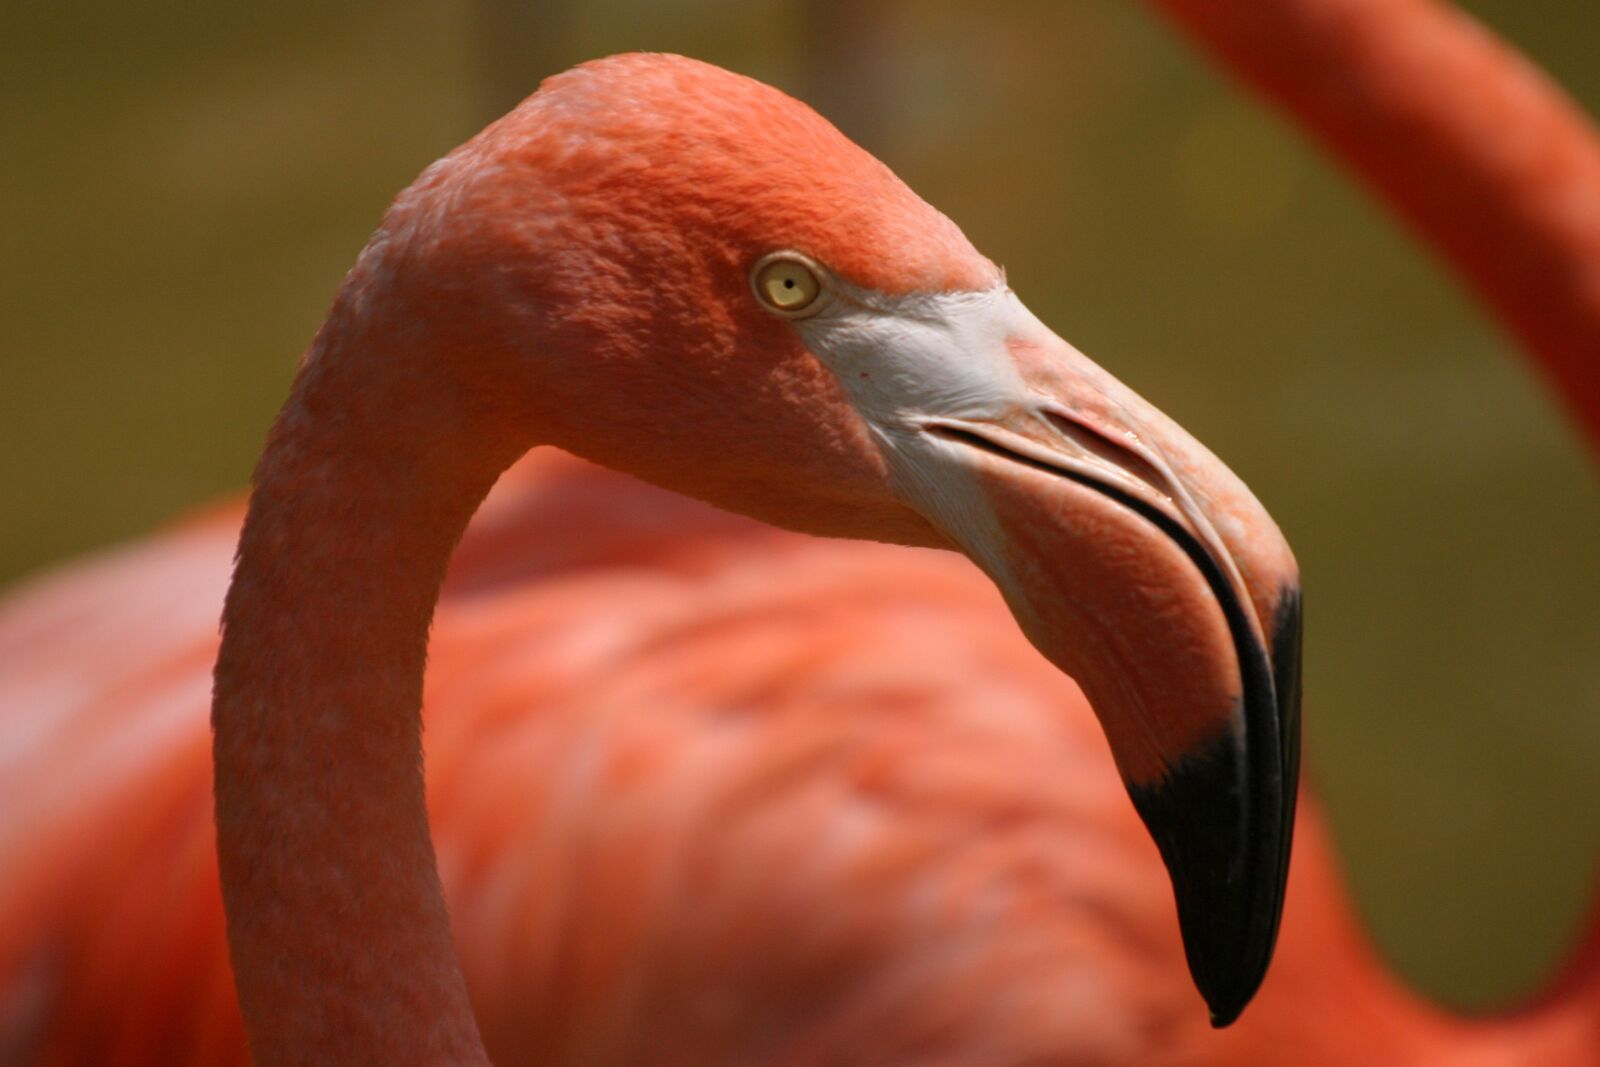 Canon EOS 10D sample photo. Flamingo, bird, pink photography